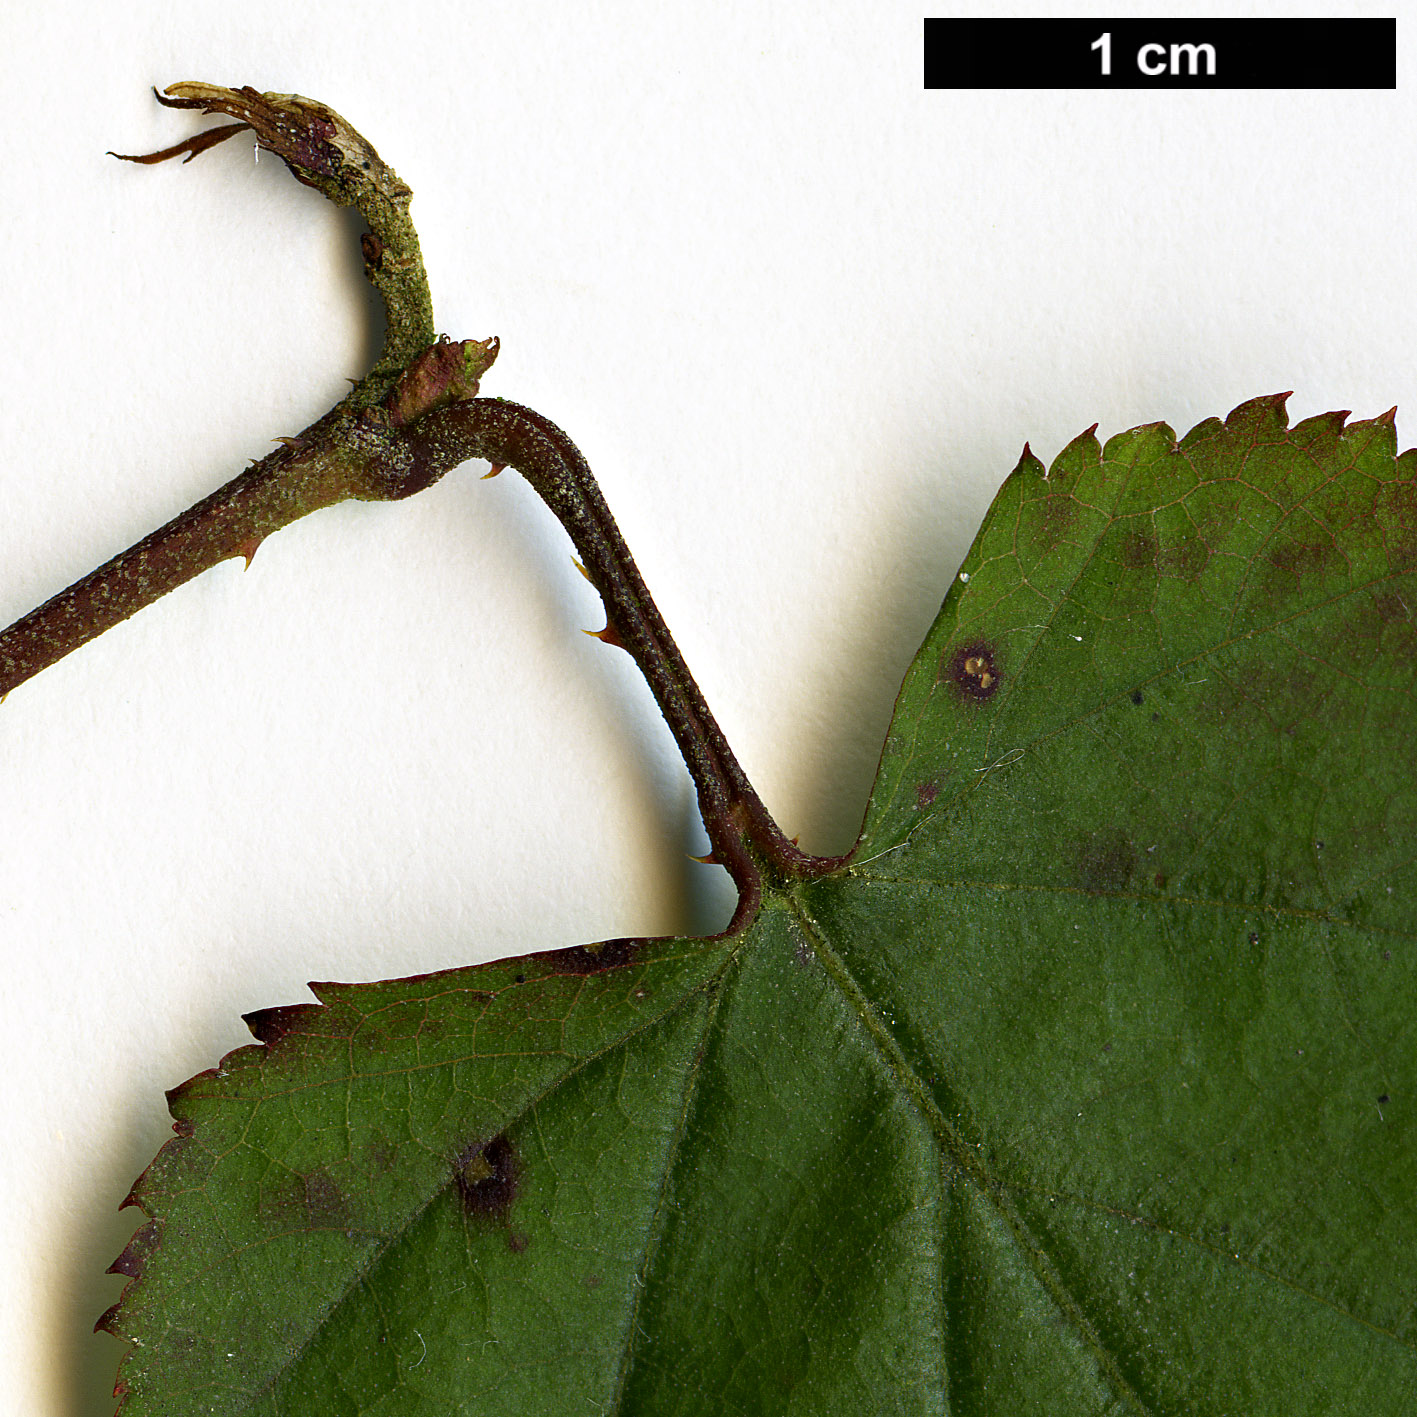 High resolution image: Family: Rosaceae - Genus: Rubus - Taxon: lambertianus - SpeciesSub: var. morii